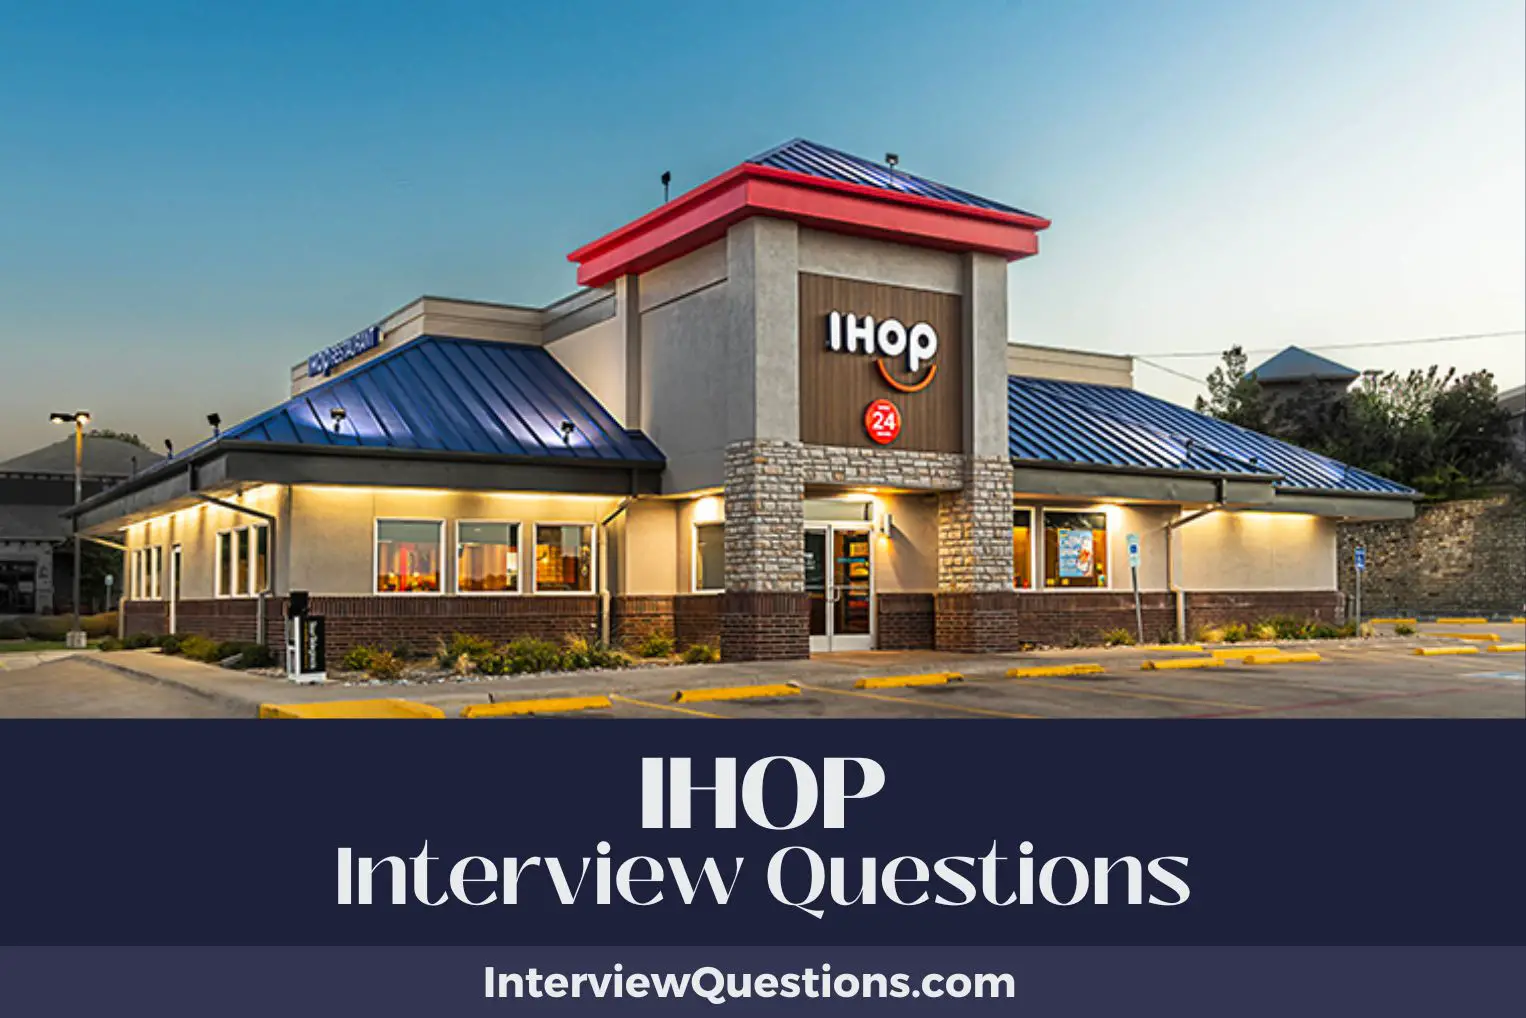 IHOP Interview Questions